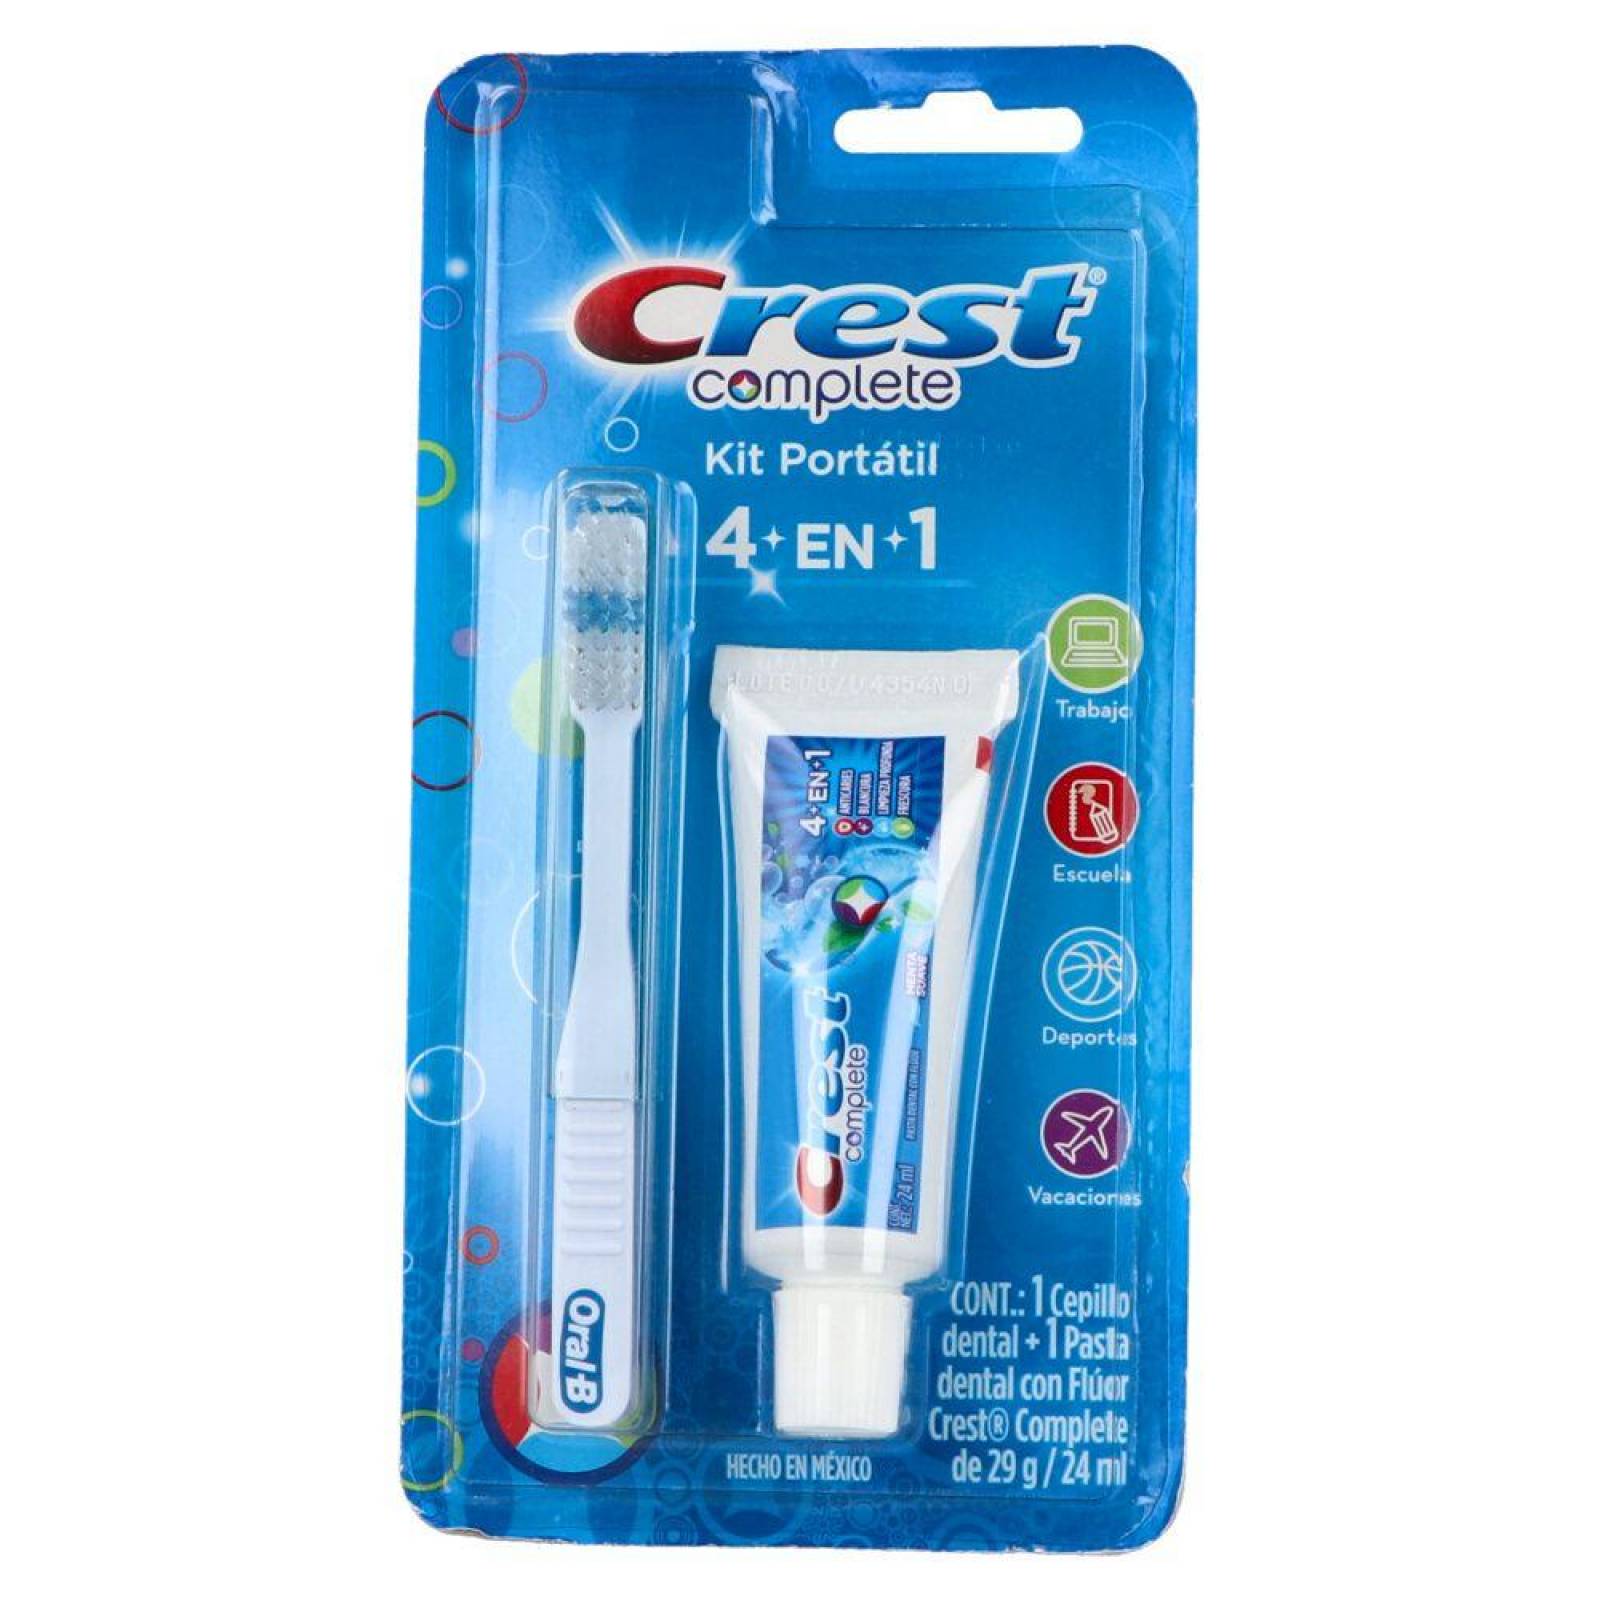 Oral-B ® Complete Kit Portátil - Kit de 1 cepillo dental + 1 pasta dental